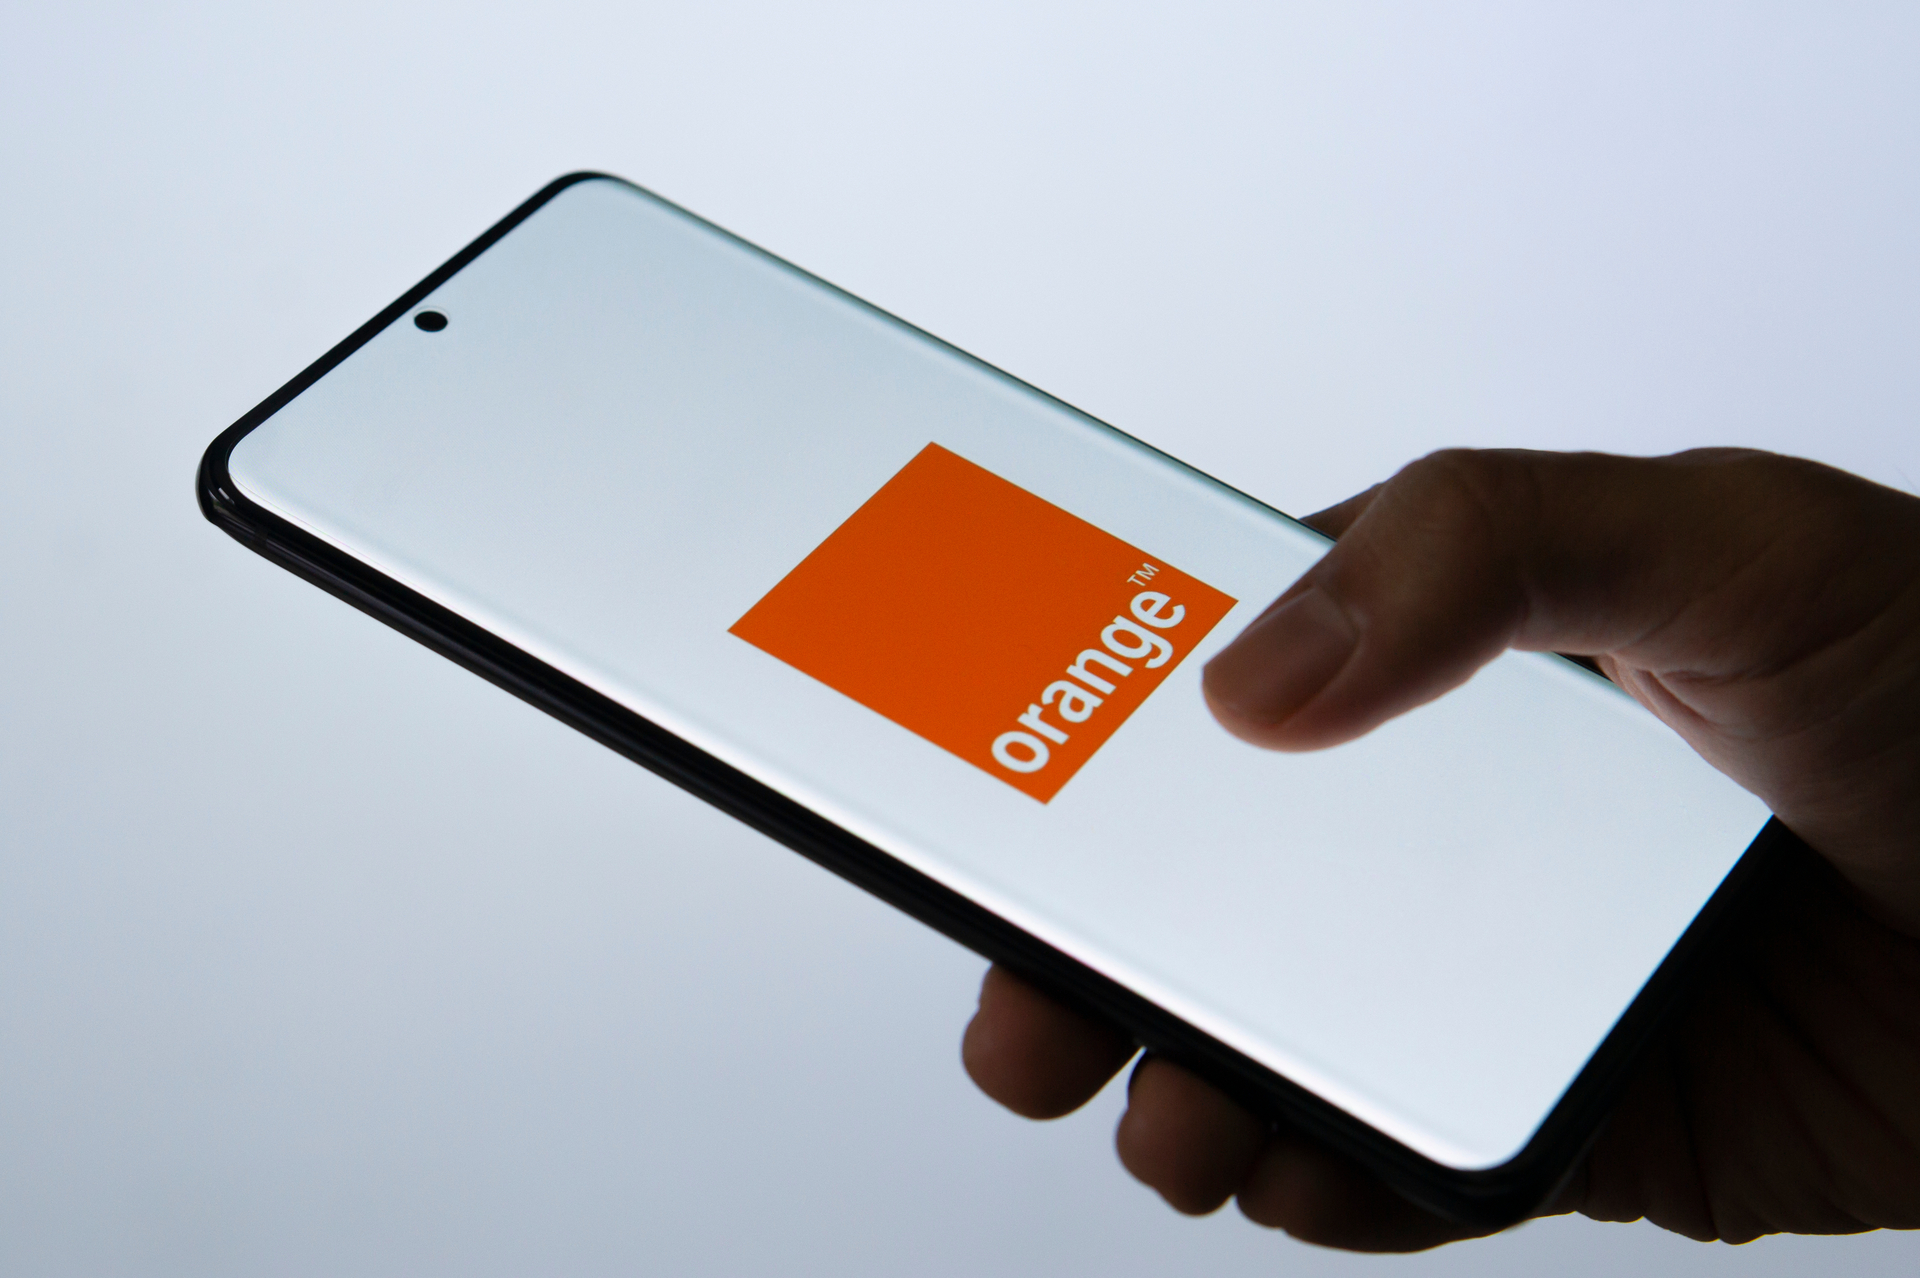 Des pannes sur le réseau mobile Orange, mais que se passe-t-il ?